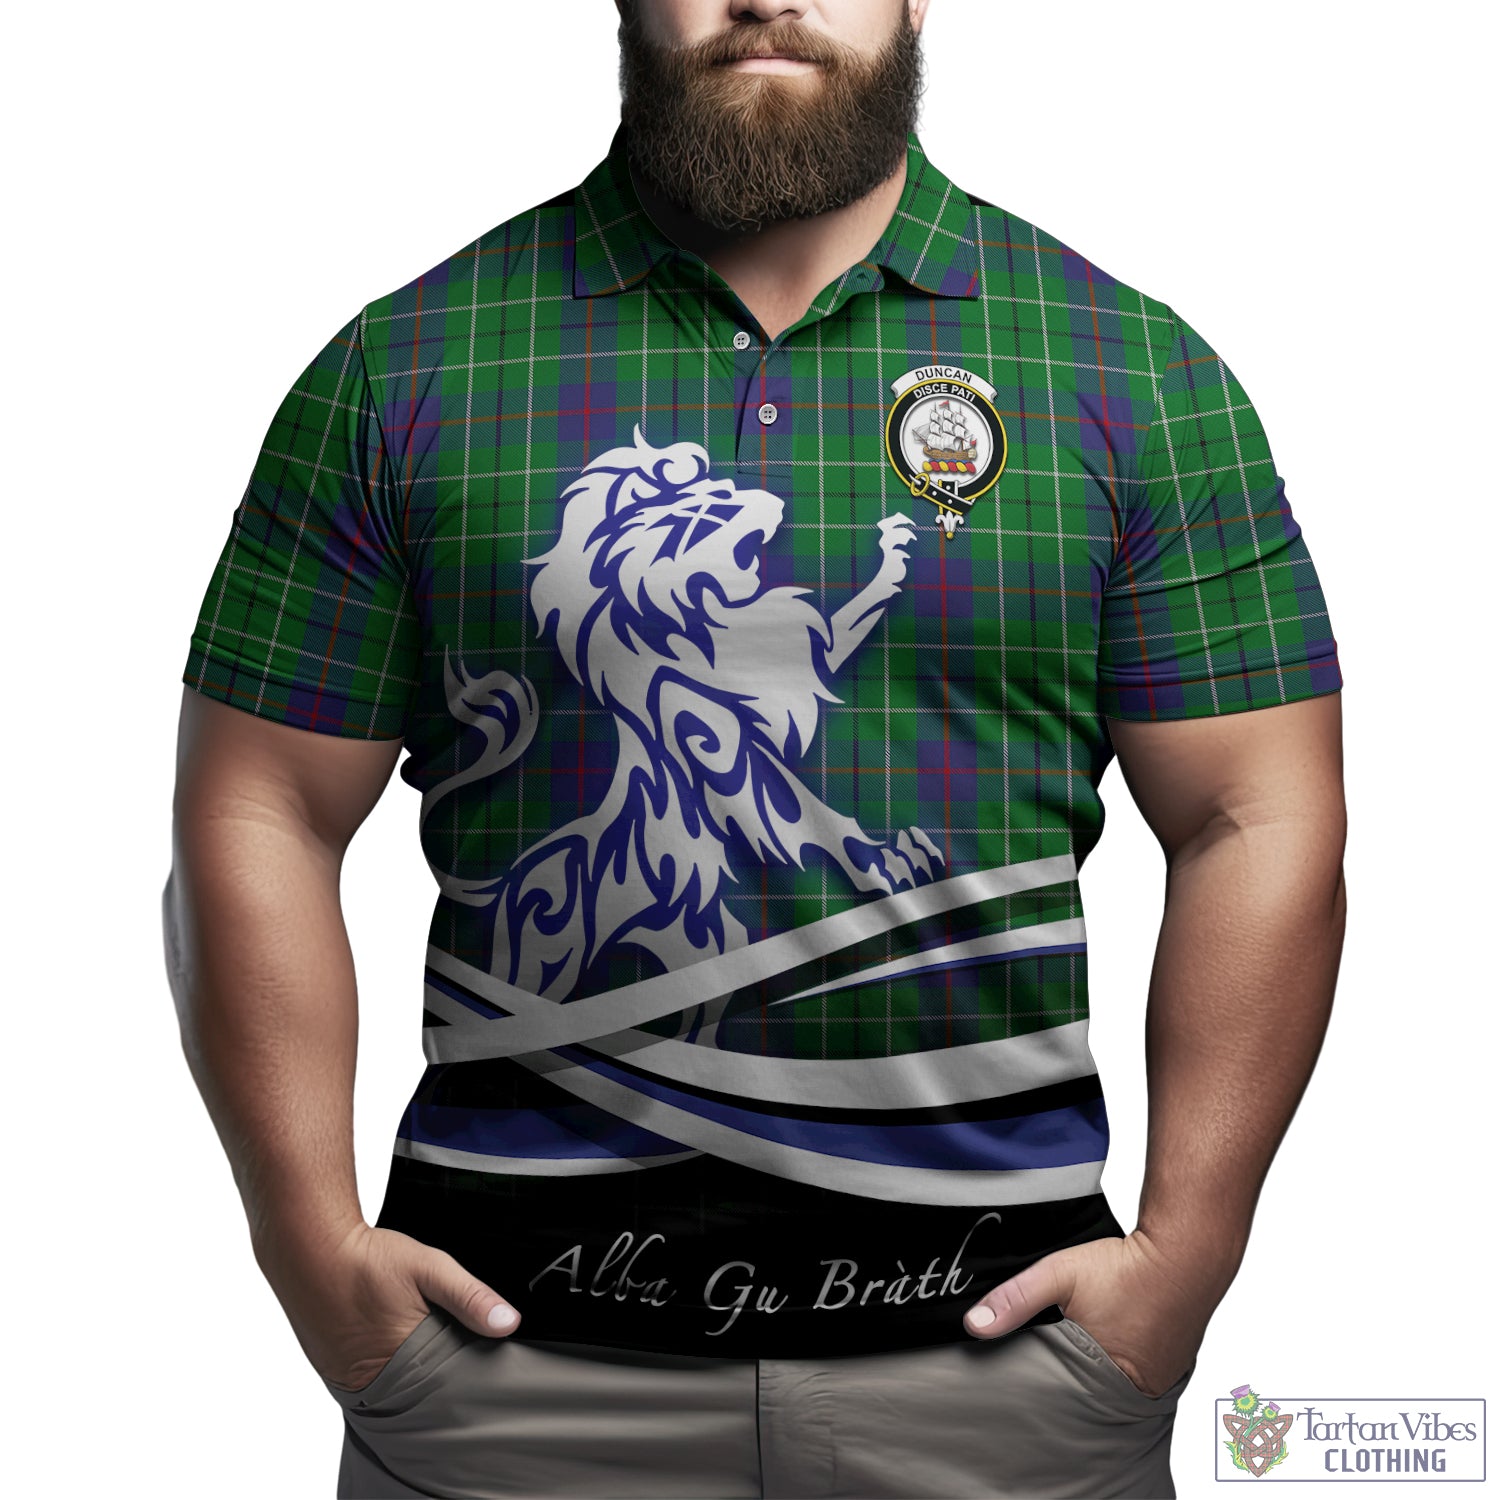 duncan-tartan-polo-shirt-with-alba-gu-brath-regal-lion-emblem